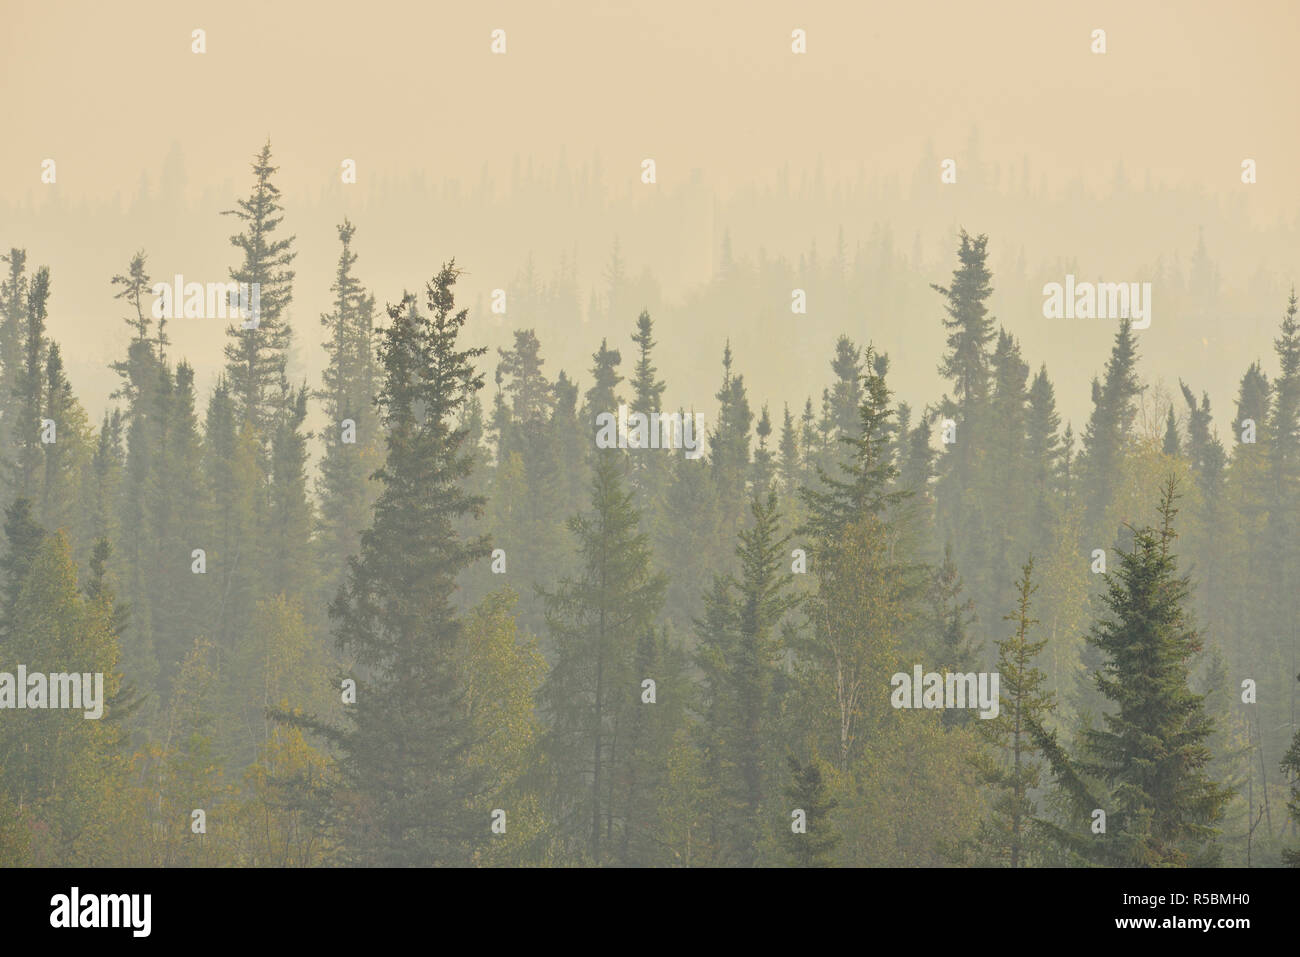 Les épinettes boréales dans le smog, les incendies de forêt, Ingraham Trail Yellowknife, Territoires du Nord-Ouest, Canada Banque D'Images